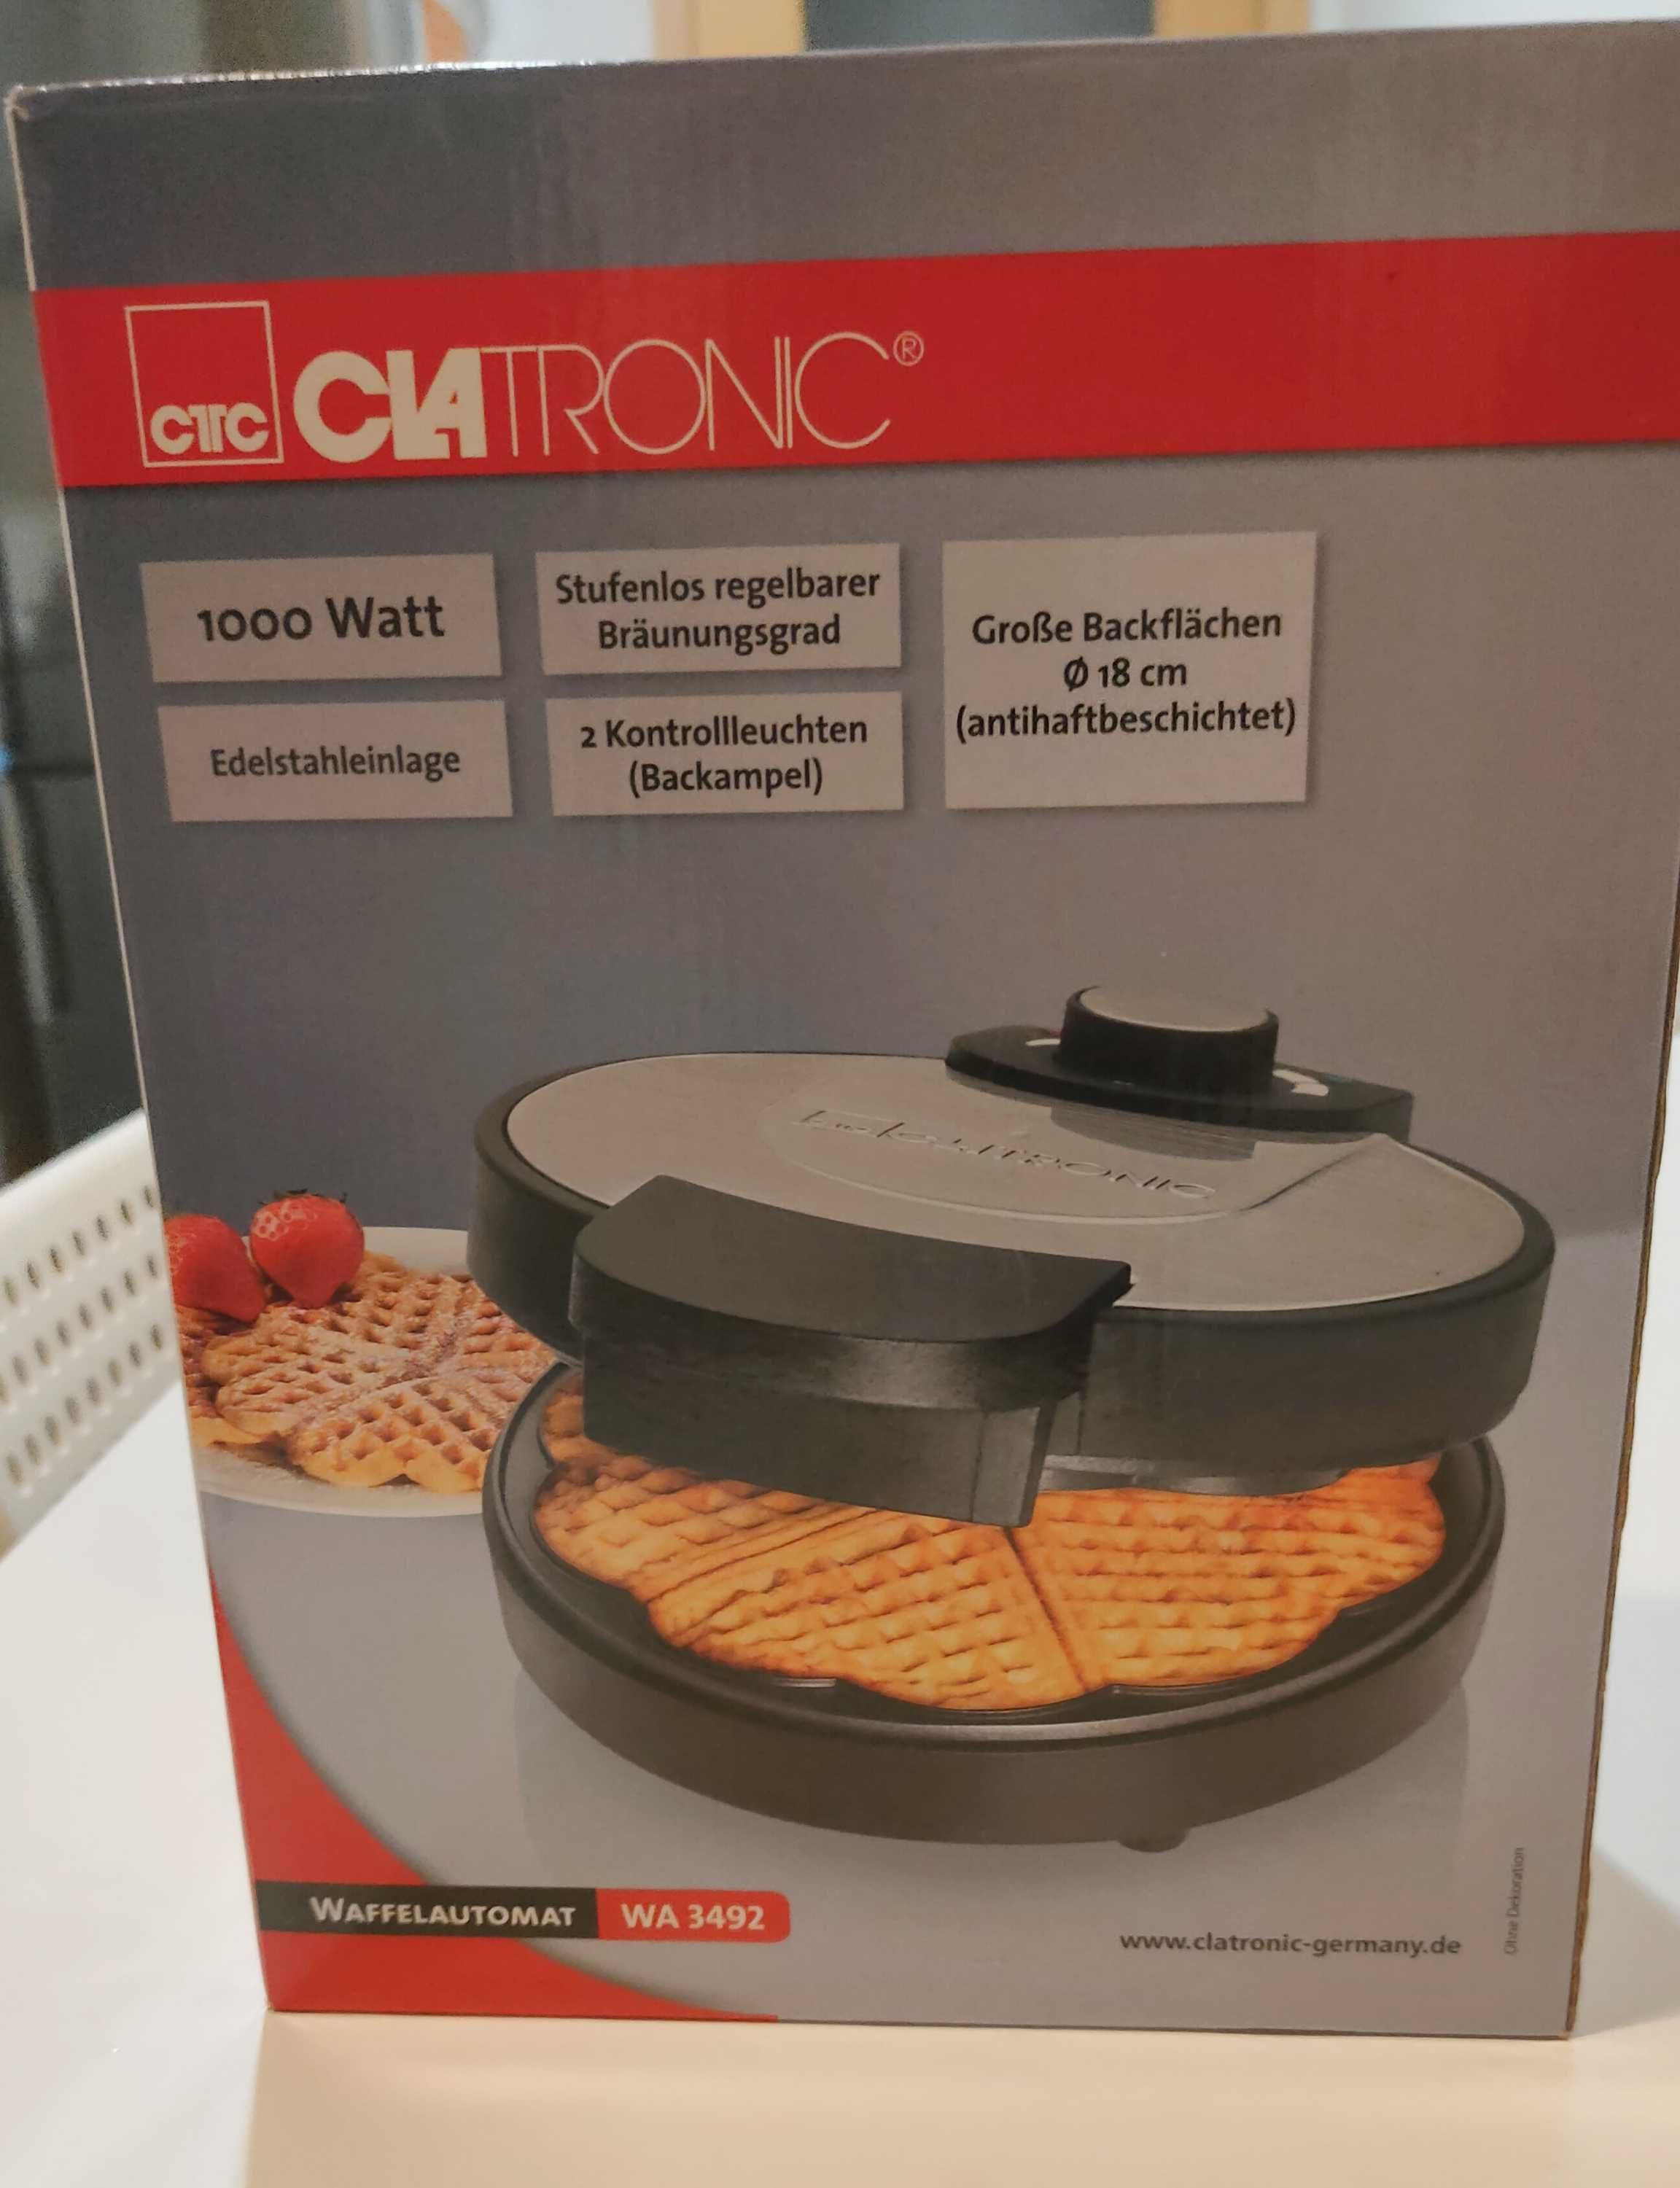 Máquina de Waffles CLATRONIC (1000 W)